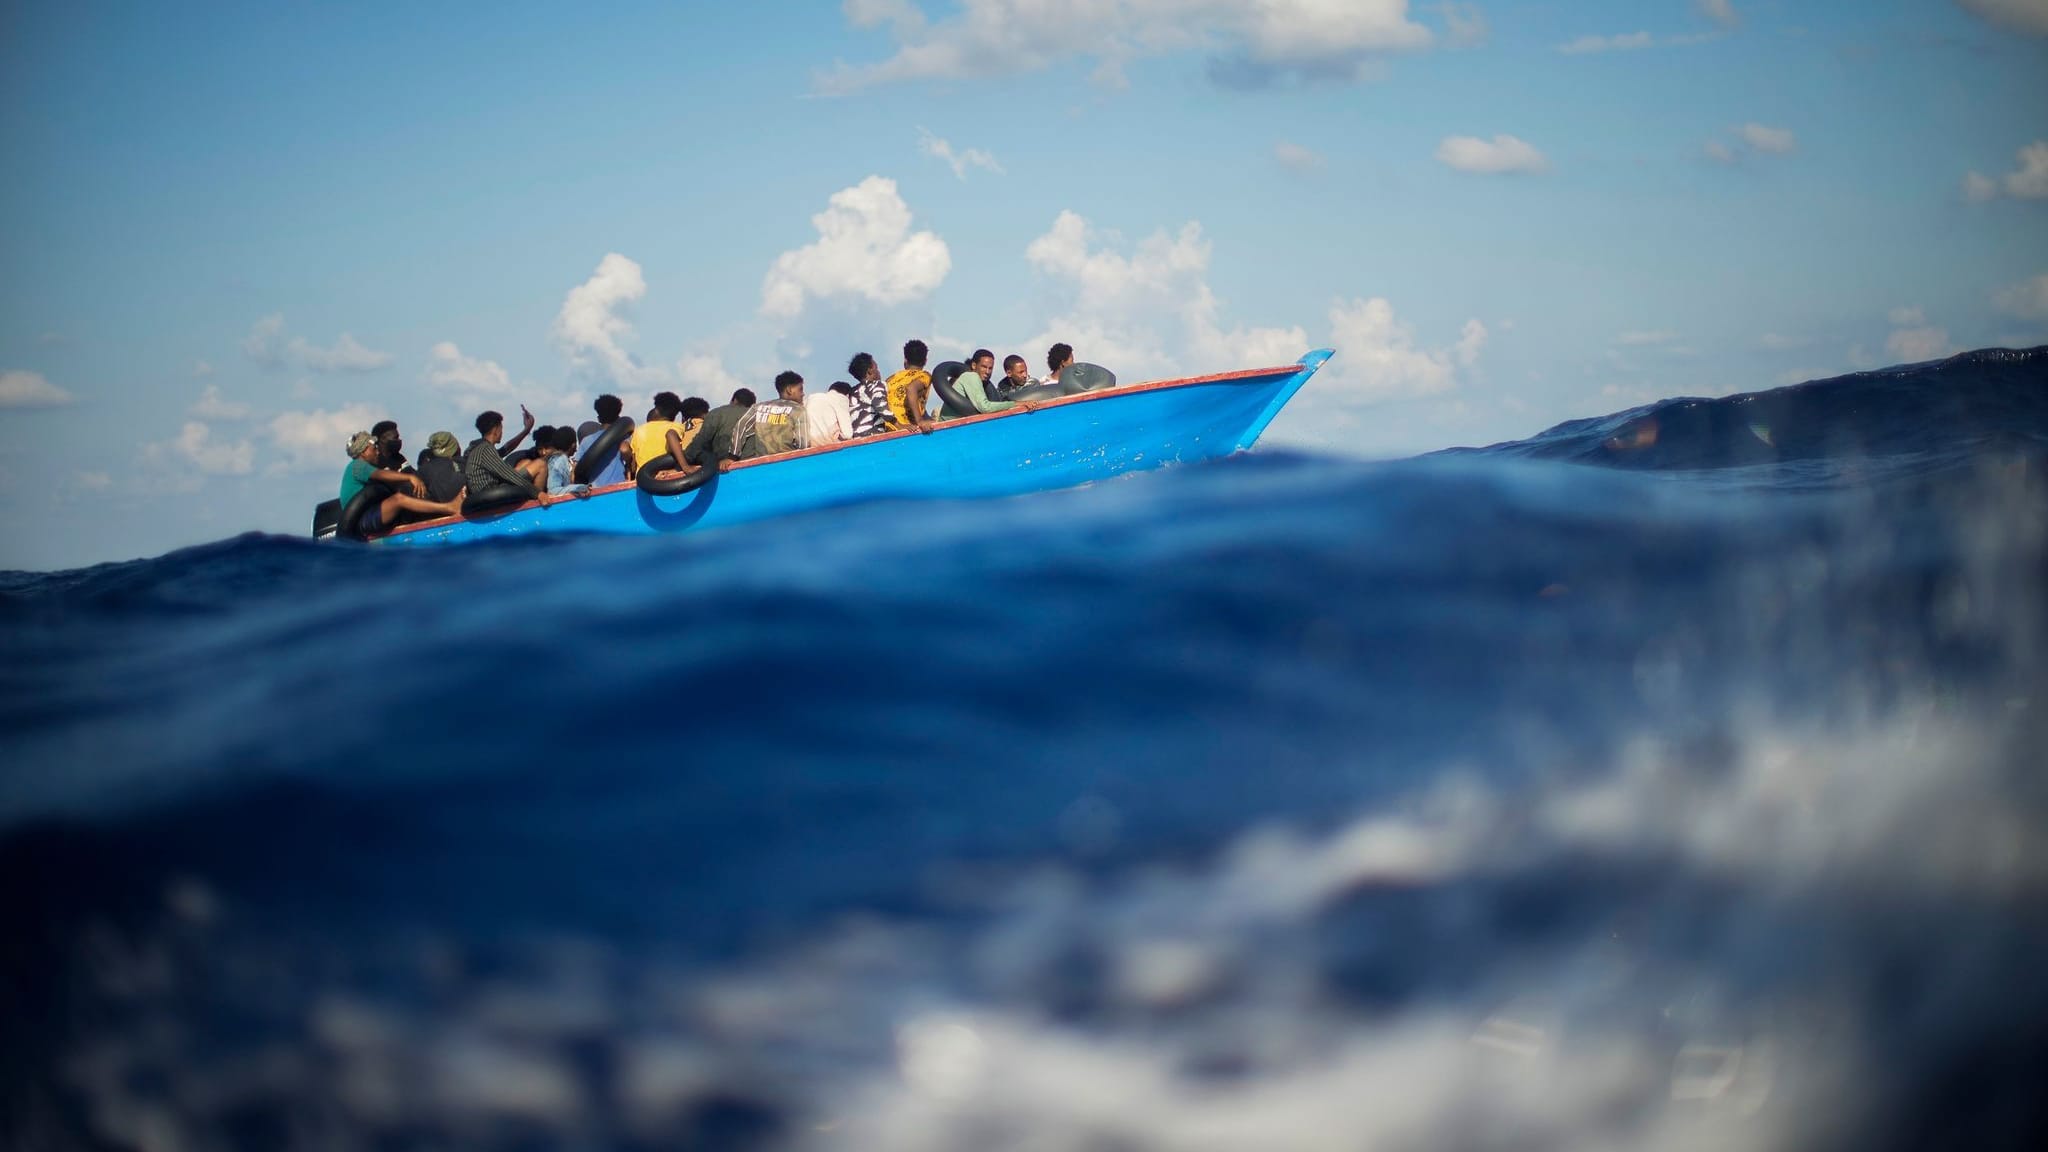 Schiffsunglück vor Lampedusa: Noch 15 Menschen vermisst